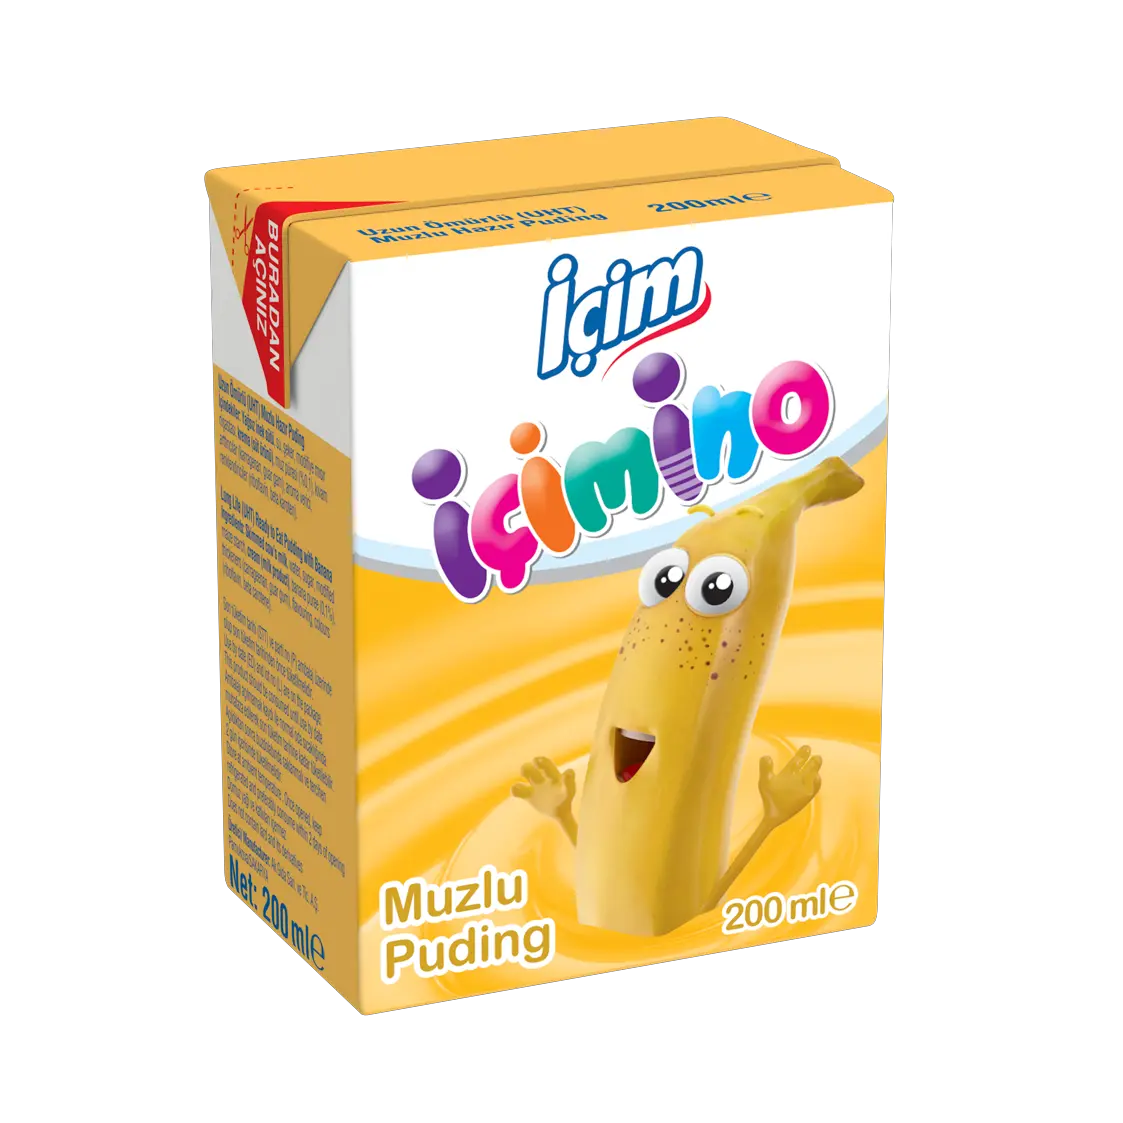 Ichimino Banana Pudding